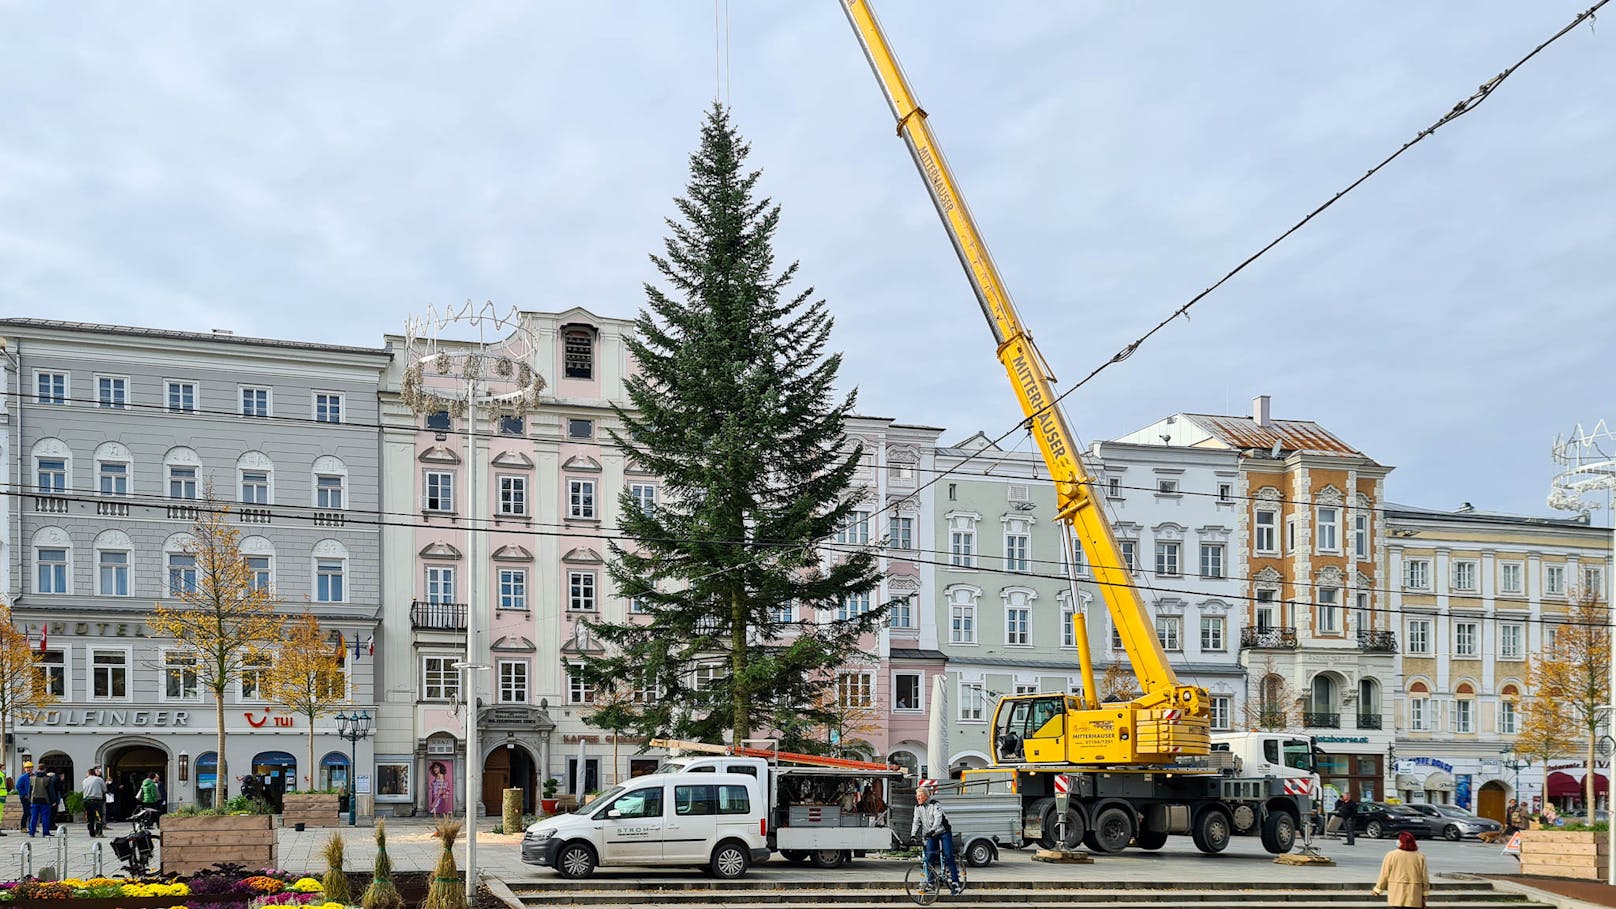 Am Donnerstagvormittag wurde die 26-Meter hohe Tanne am Linzer Hauptplatz aufgestellt.